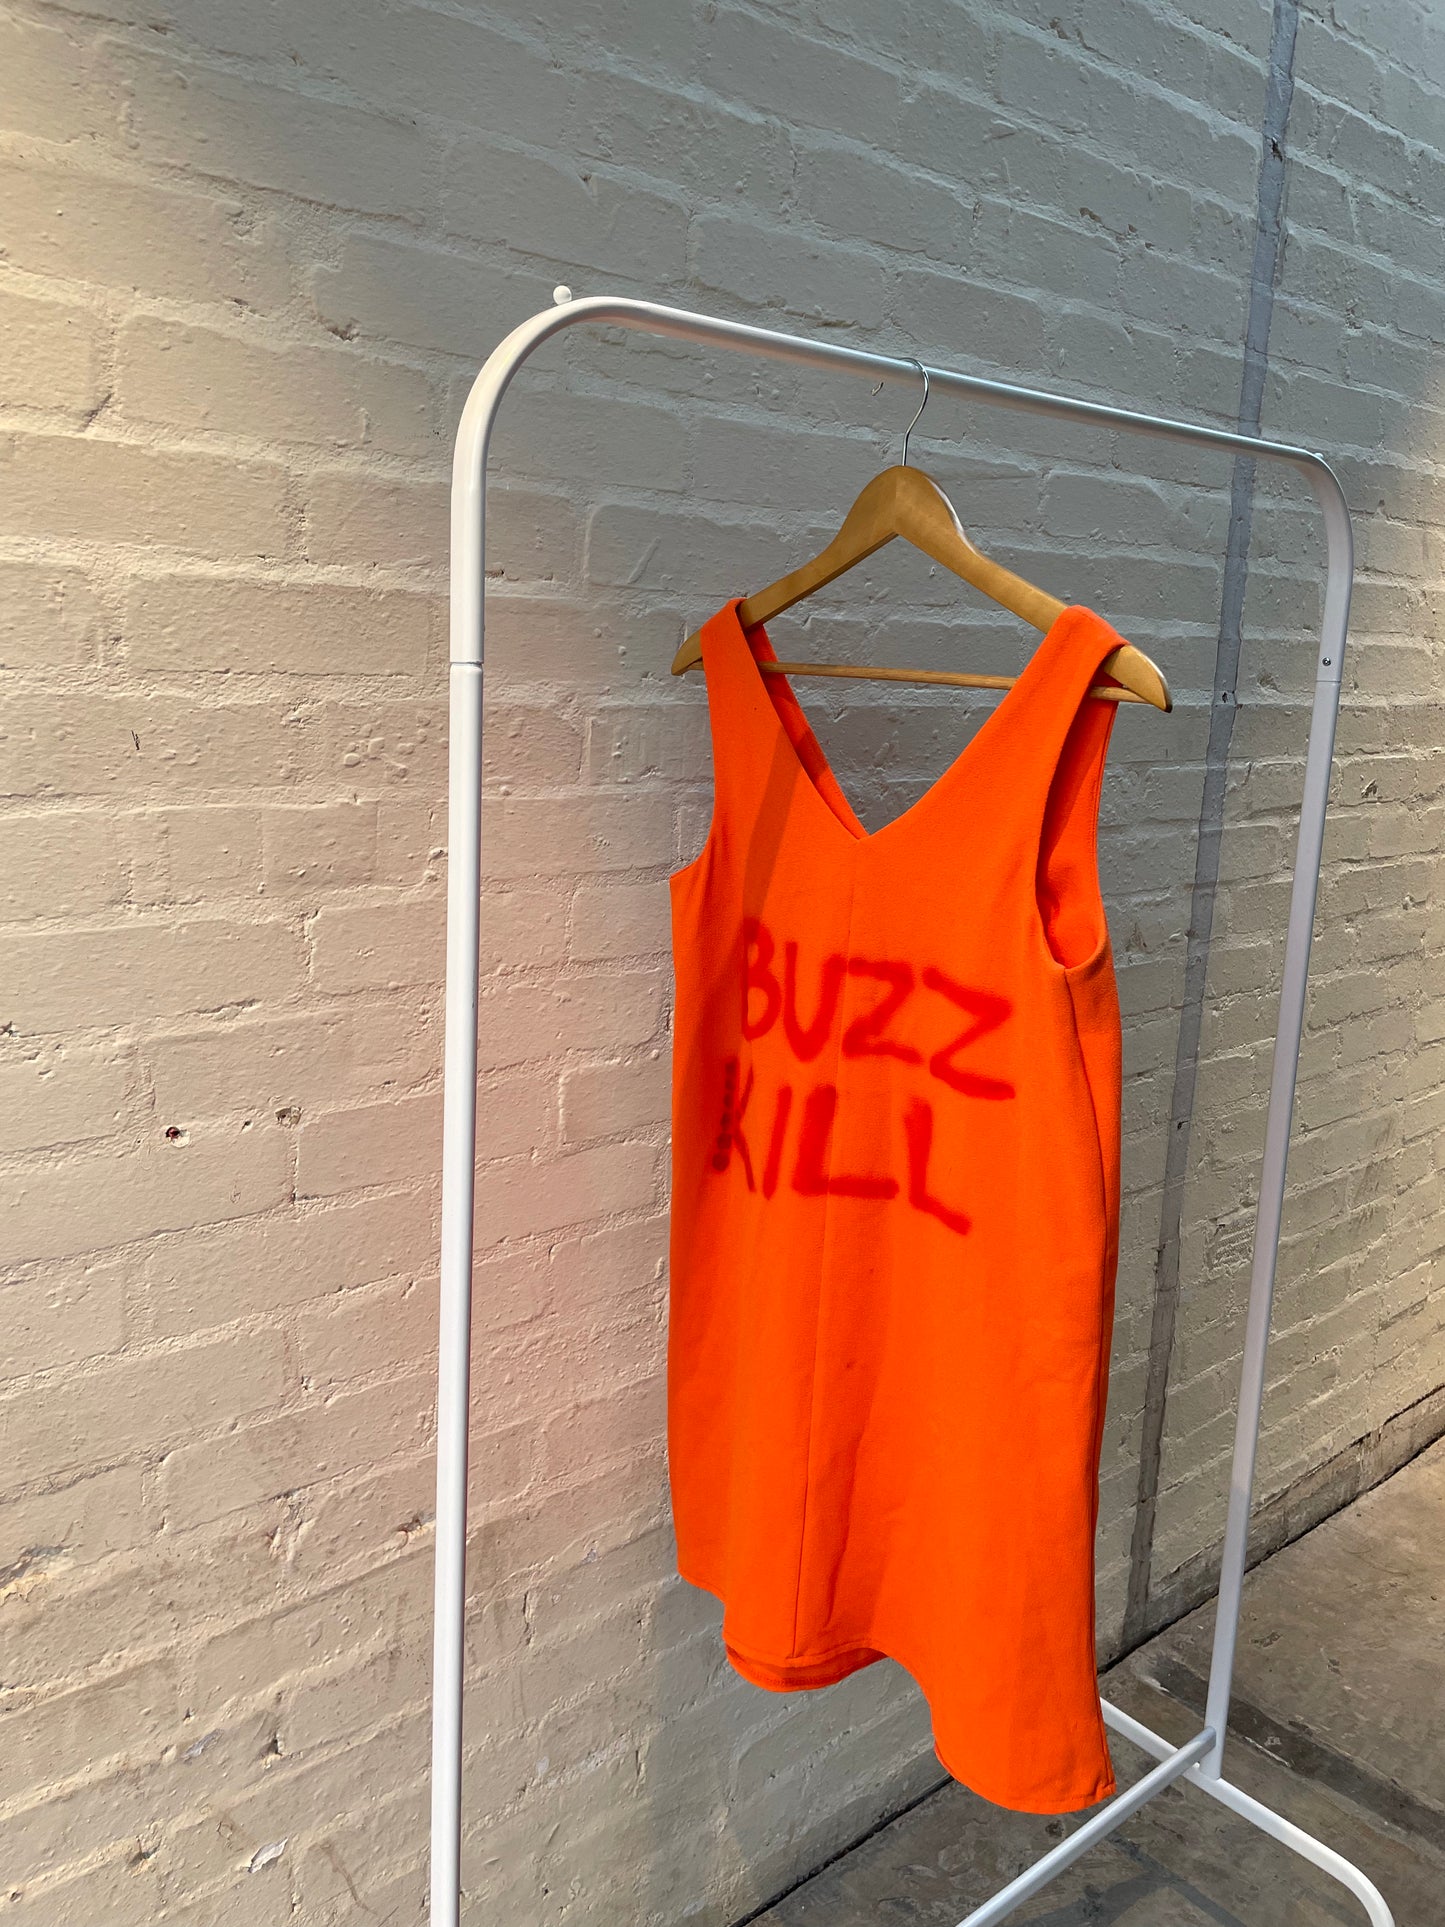 Buzz Kill dress